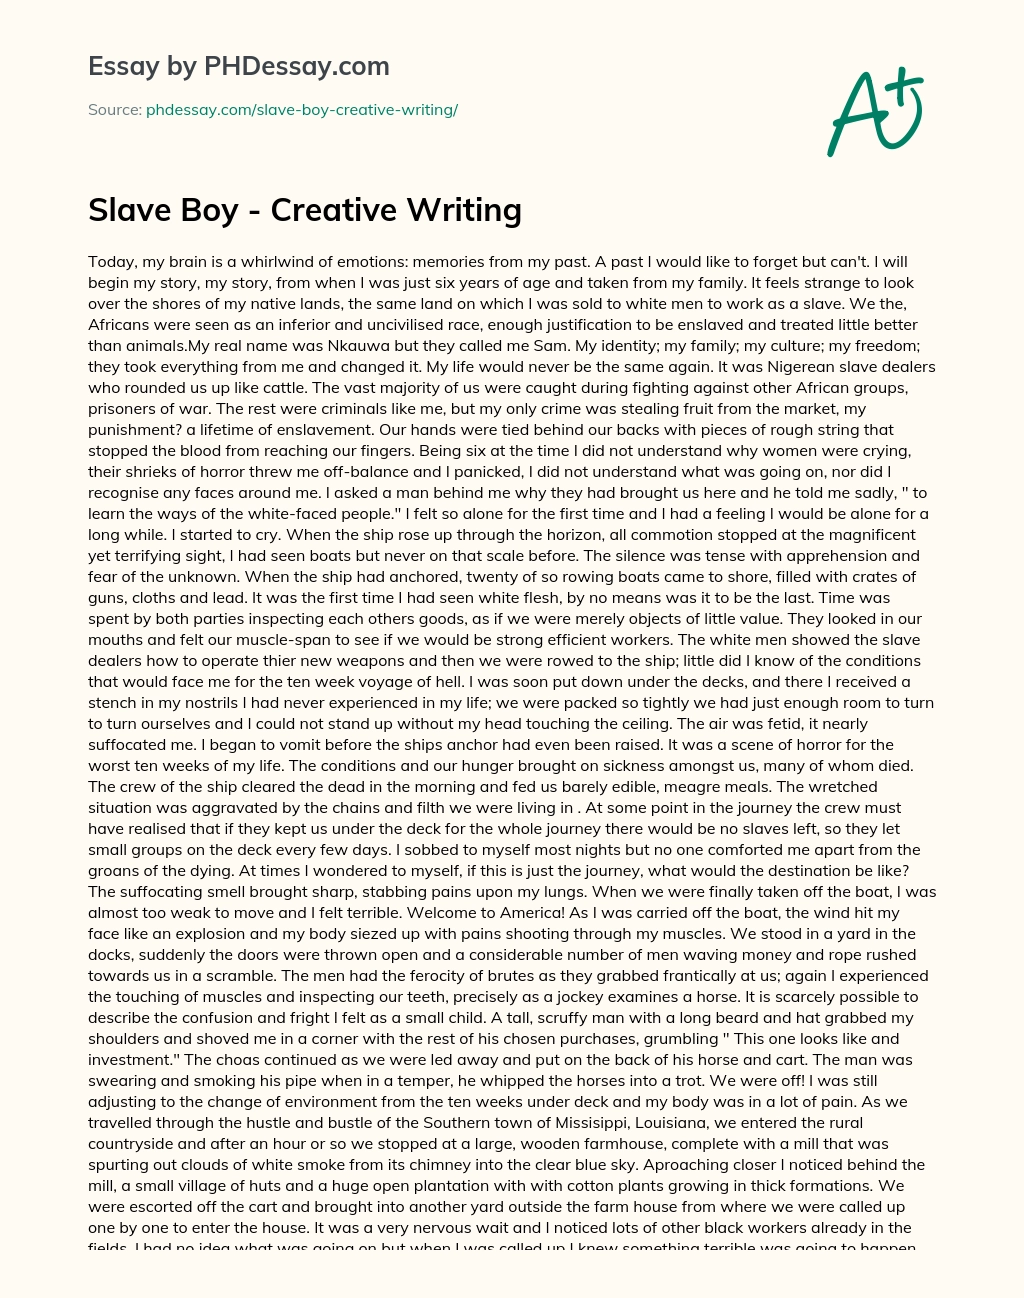 Slave Boy – Creative Writing essay